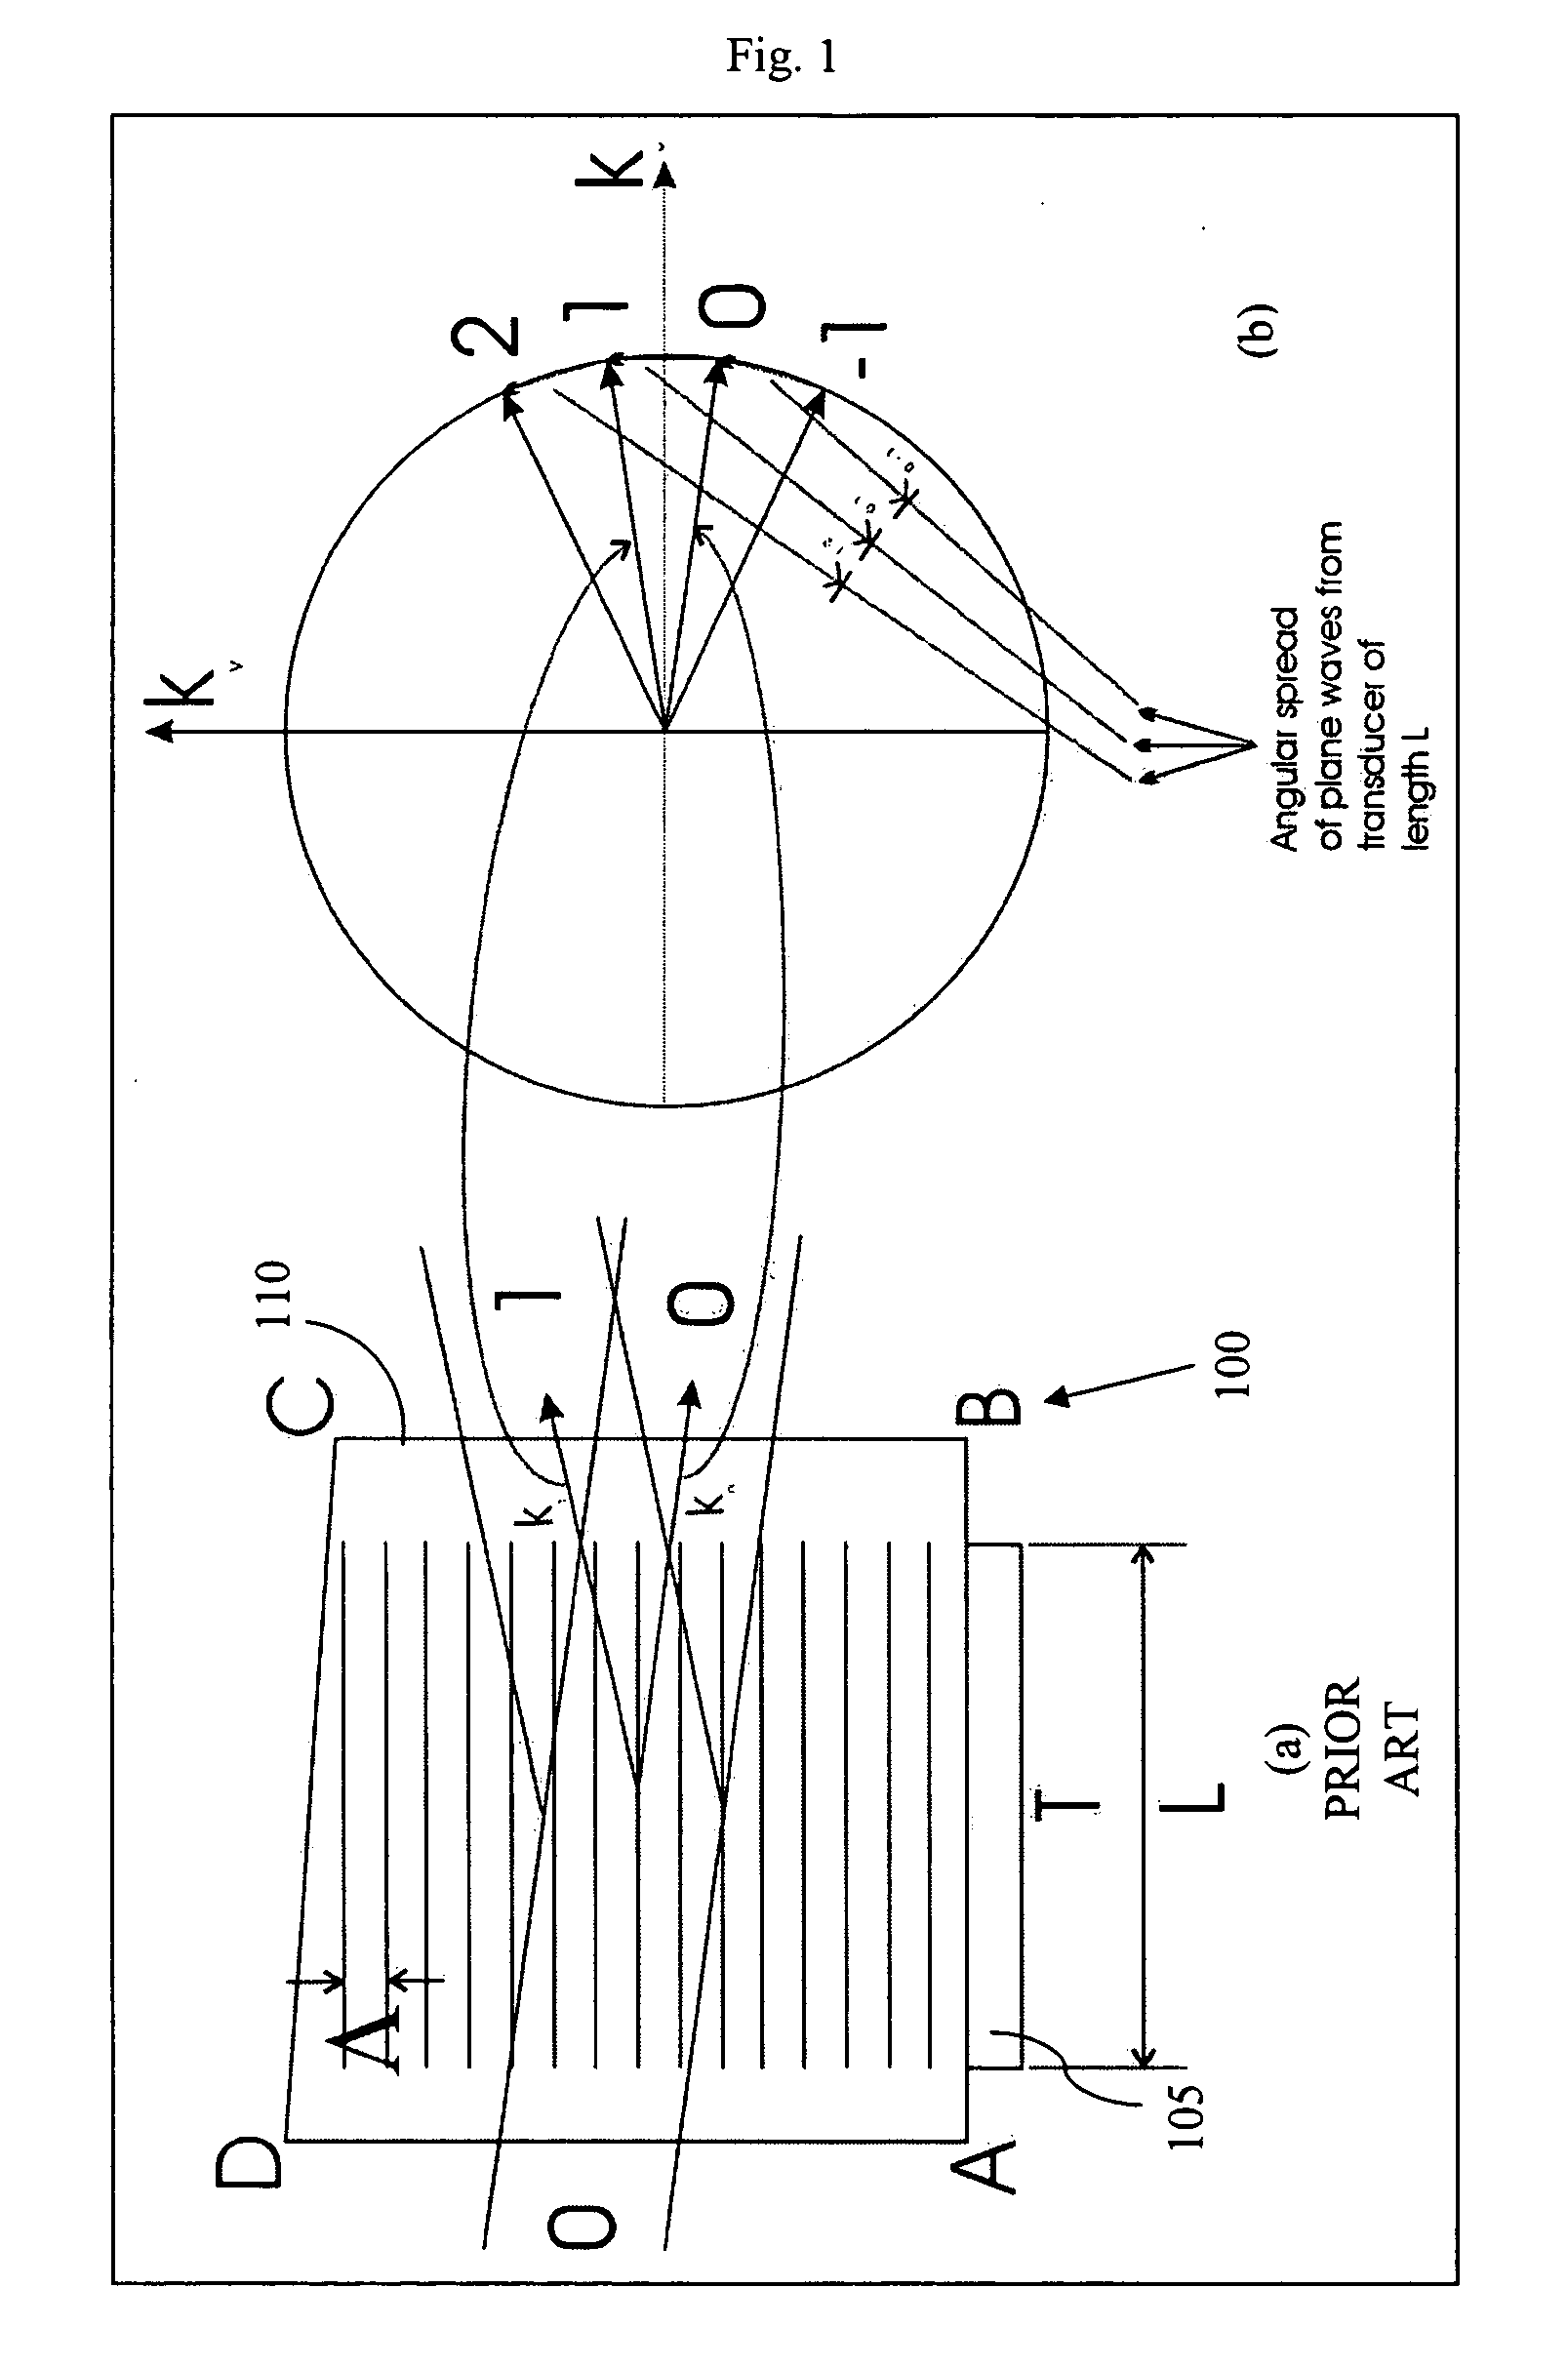 Silicon acousto-optic modulator